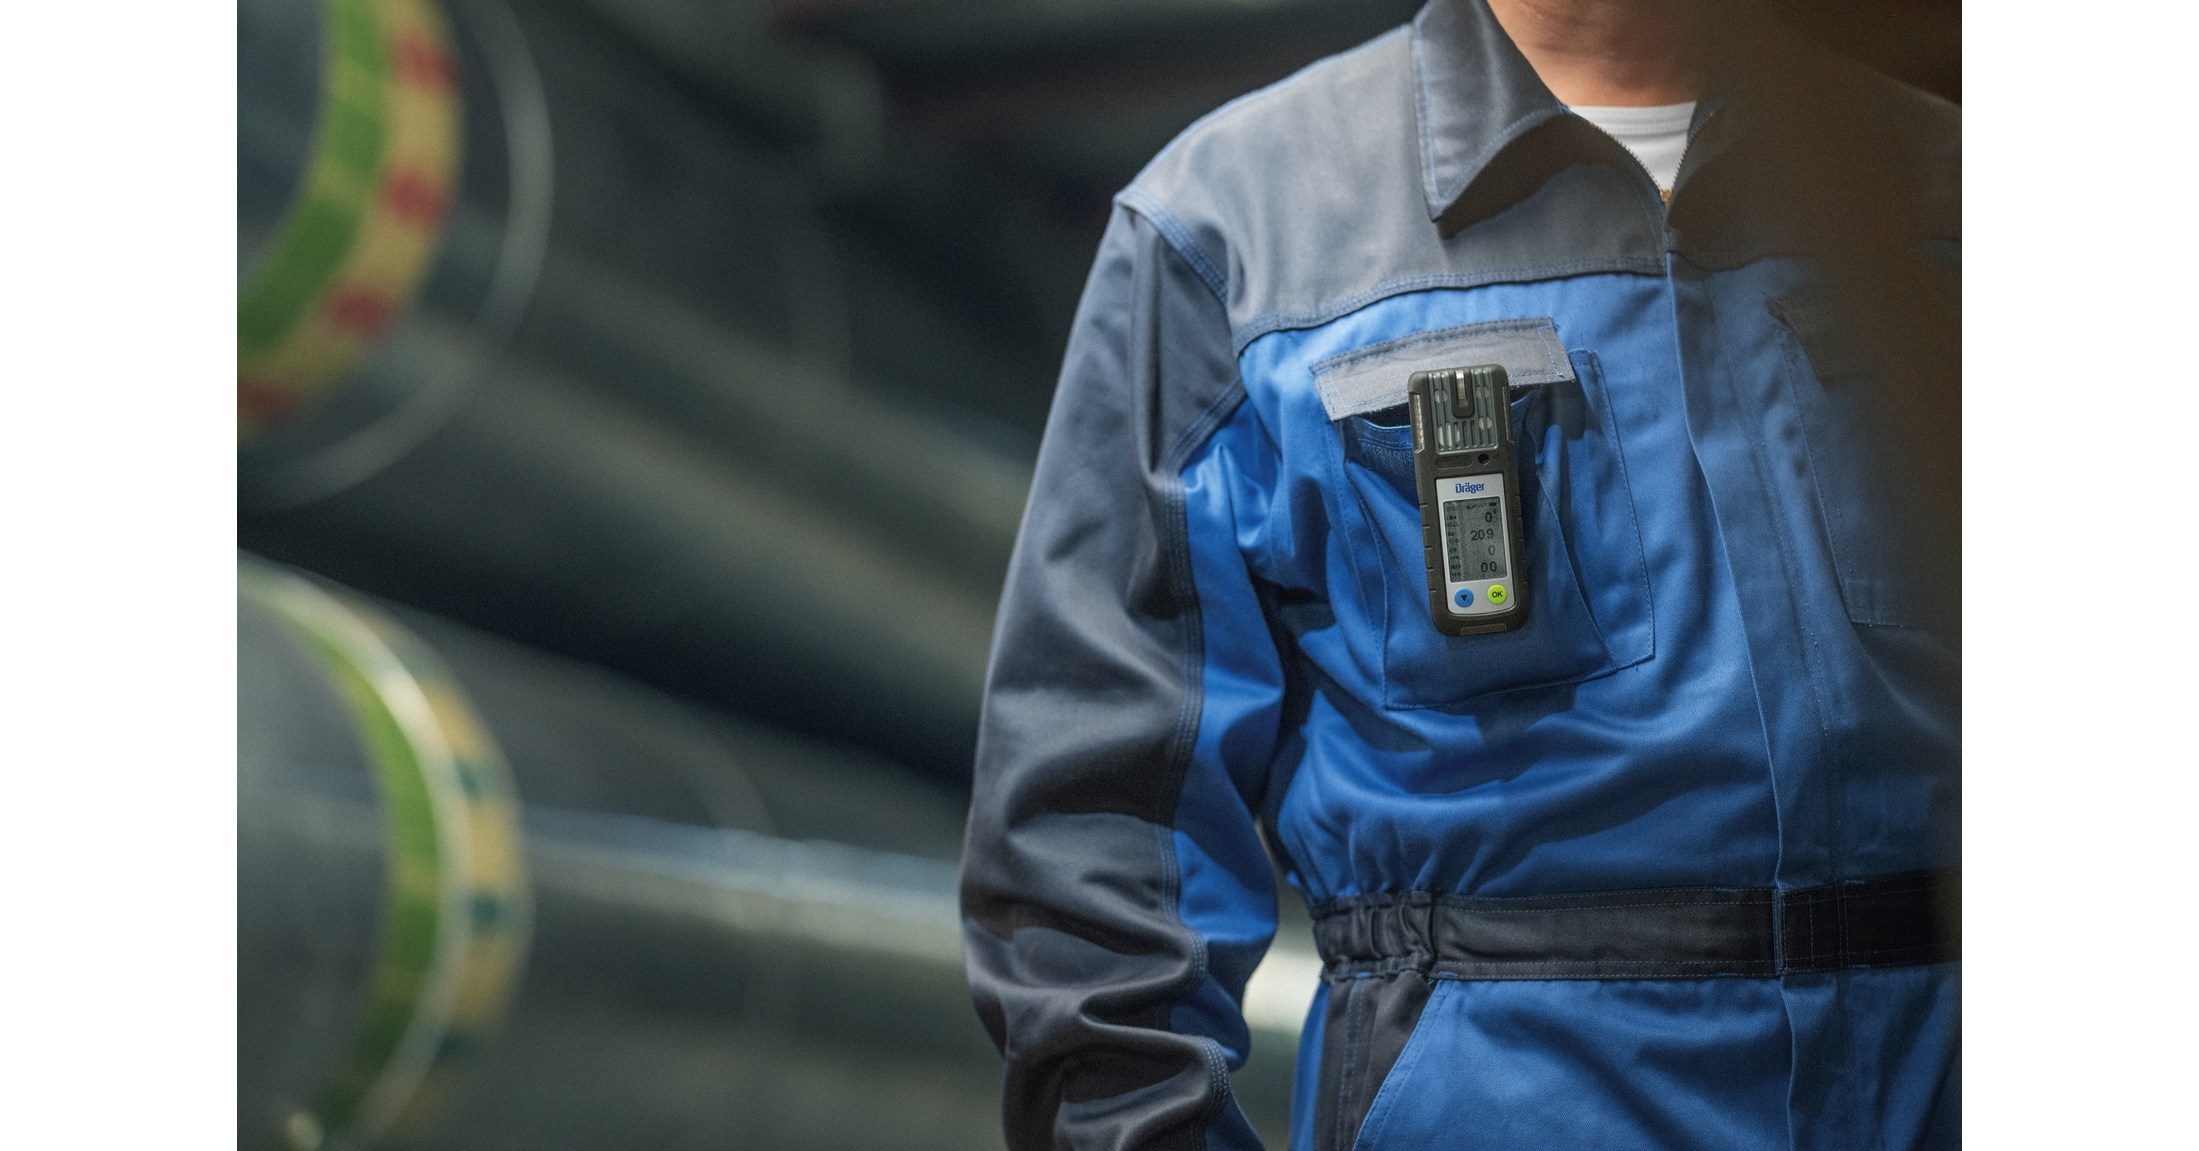 A Draeger Safety UK combina confiabilidade com nova tecnologia conectada na mais recente adição ao seu portfólio de detecção de gás